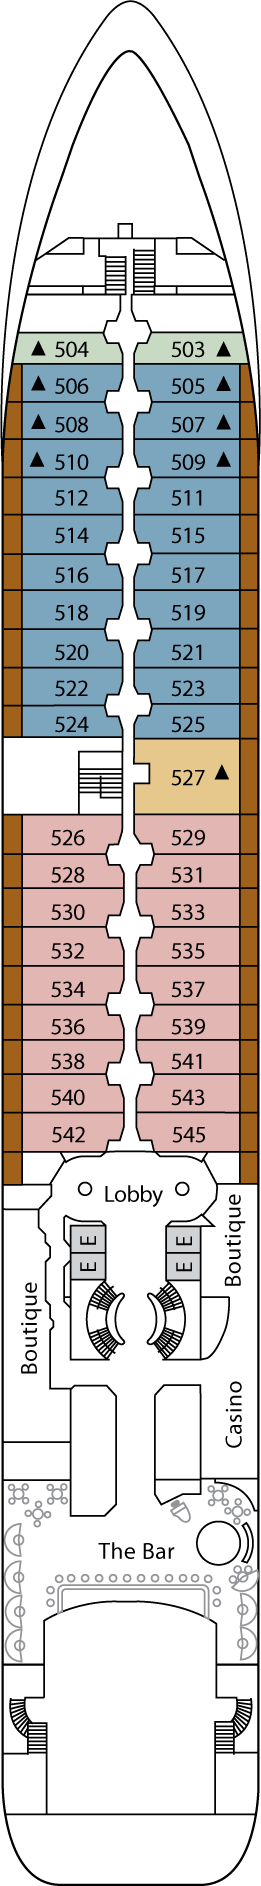 Deck 5 Deck Plan